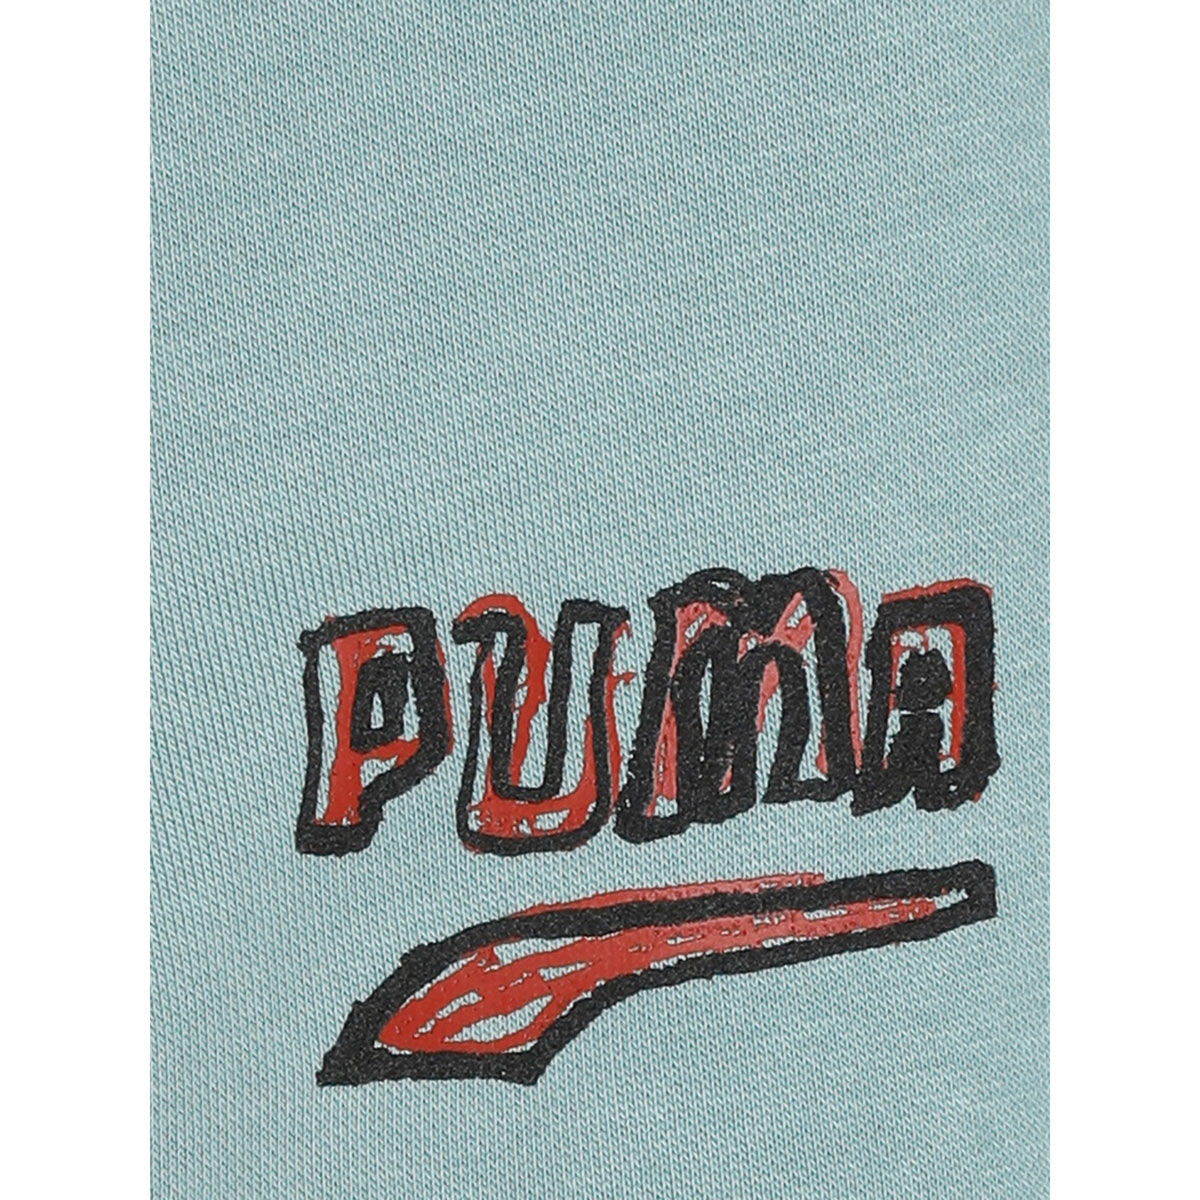 Puma T7 Btl Men's Shorts: Buy Puma T7 Btl Men's Shorts Online at Best ...